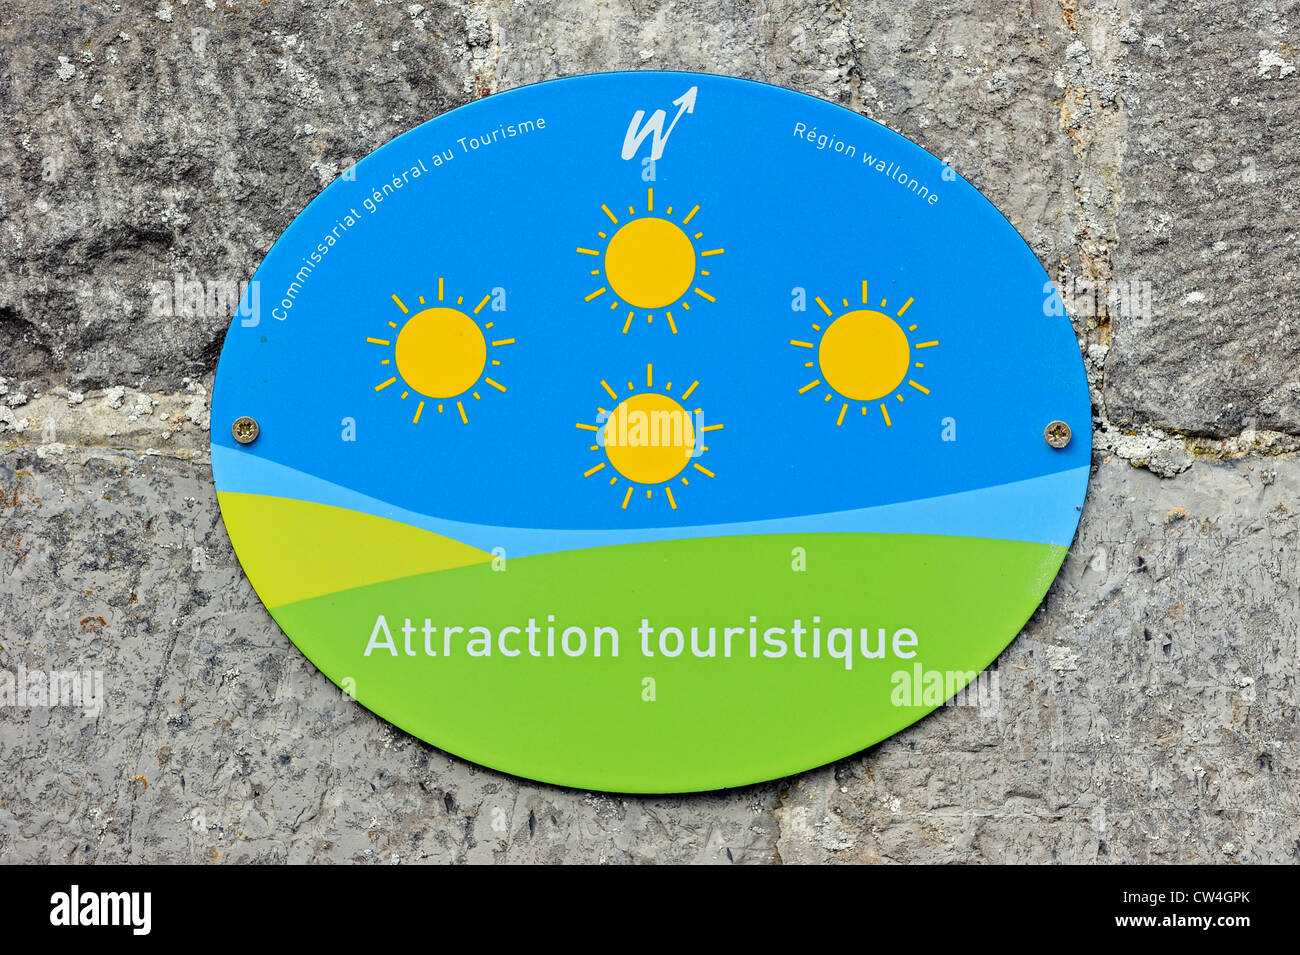 Protection avec logo de tourisme d'intérêt / attraction touristique en Wallonie, Belgique Banque D'Images